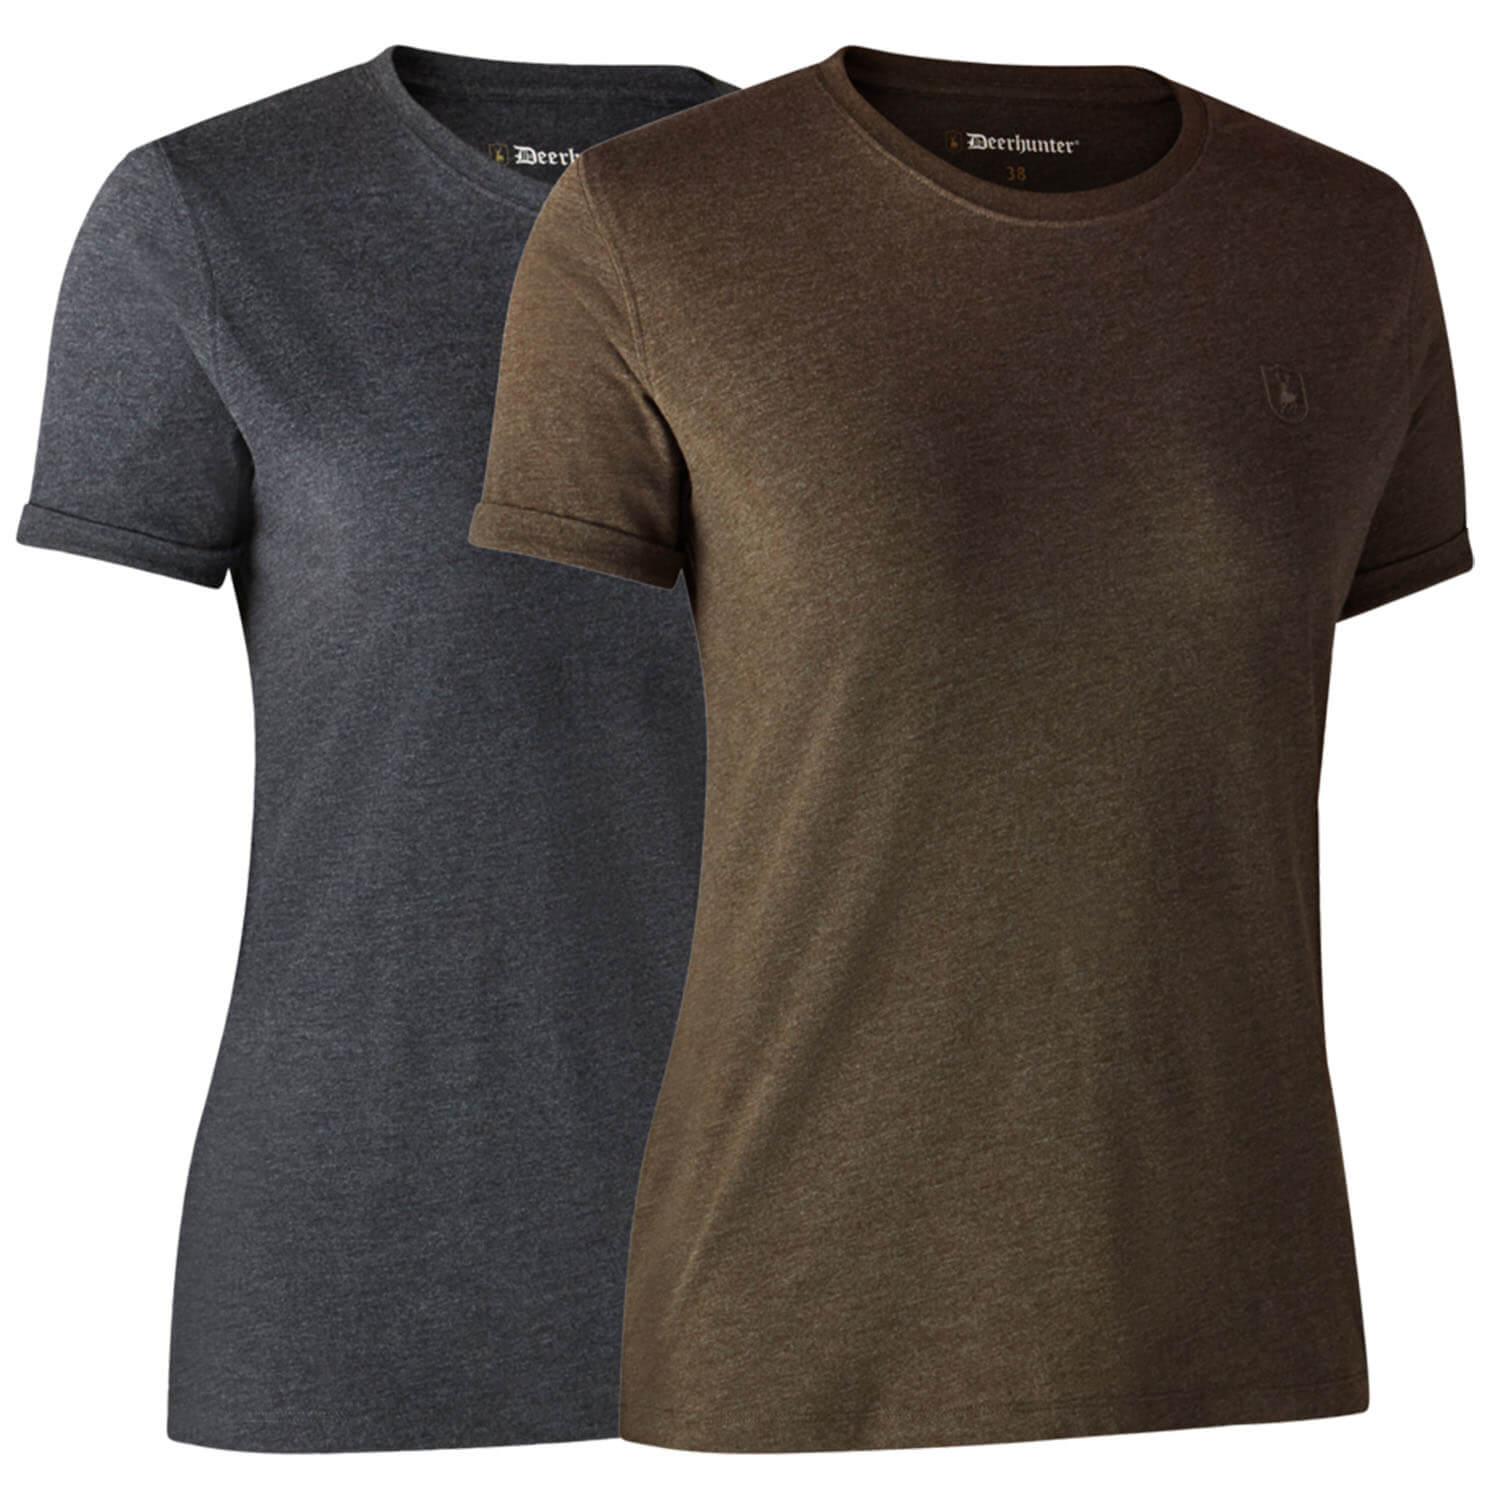  Deerhunter Dames-T-shirt basic 2-pack (bruin/grijs) - Blouses & shirts